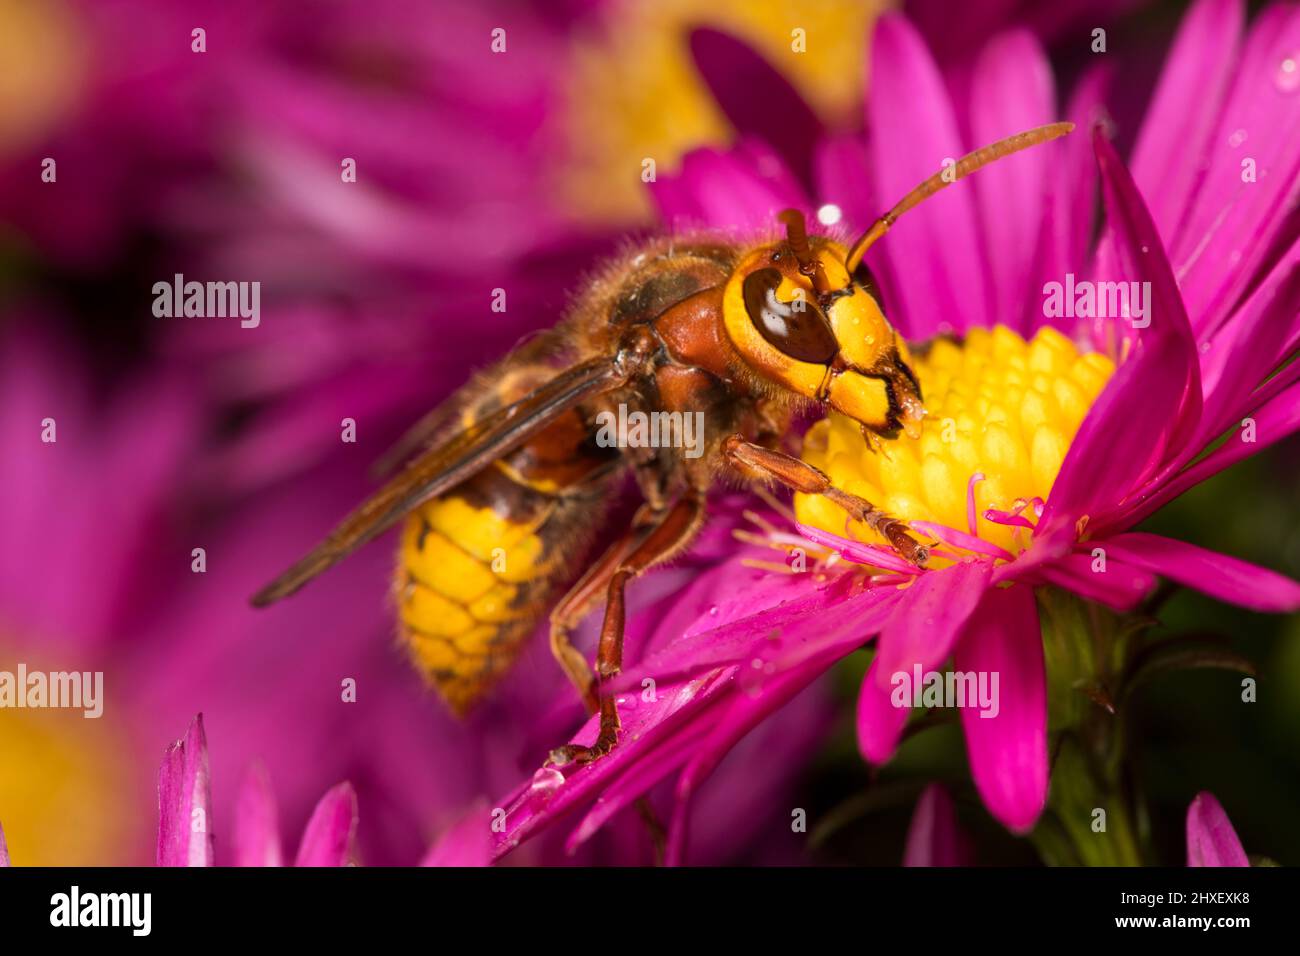 Hornet européen (Vespa crabro) adulte travaillant dans une fleur de pâquerette de Michealmas. Powys, pays de Galles. Septembre. Banque D'Images